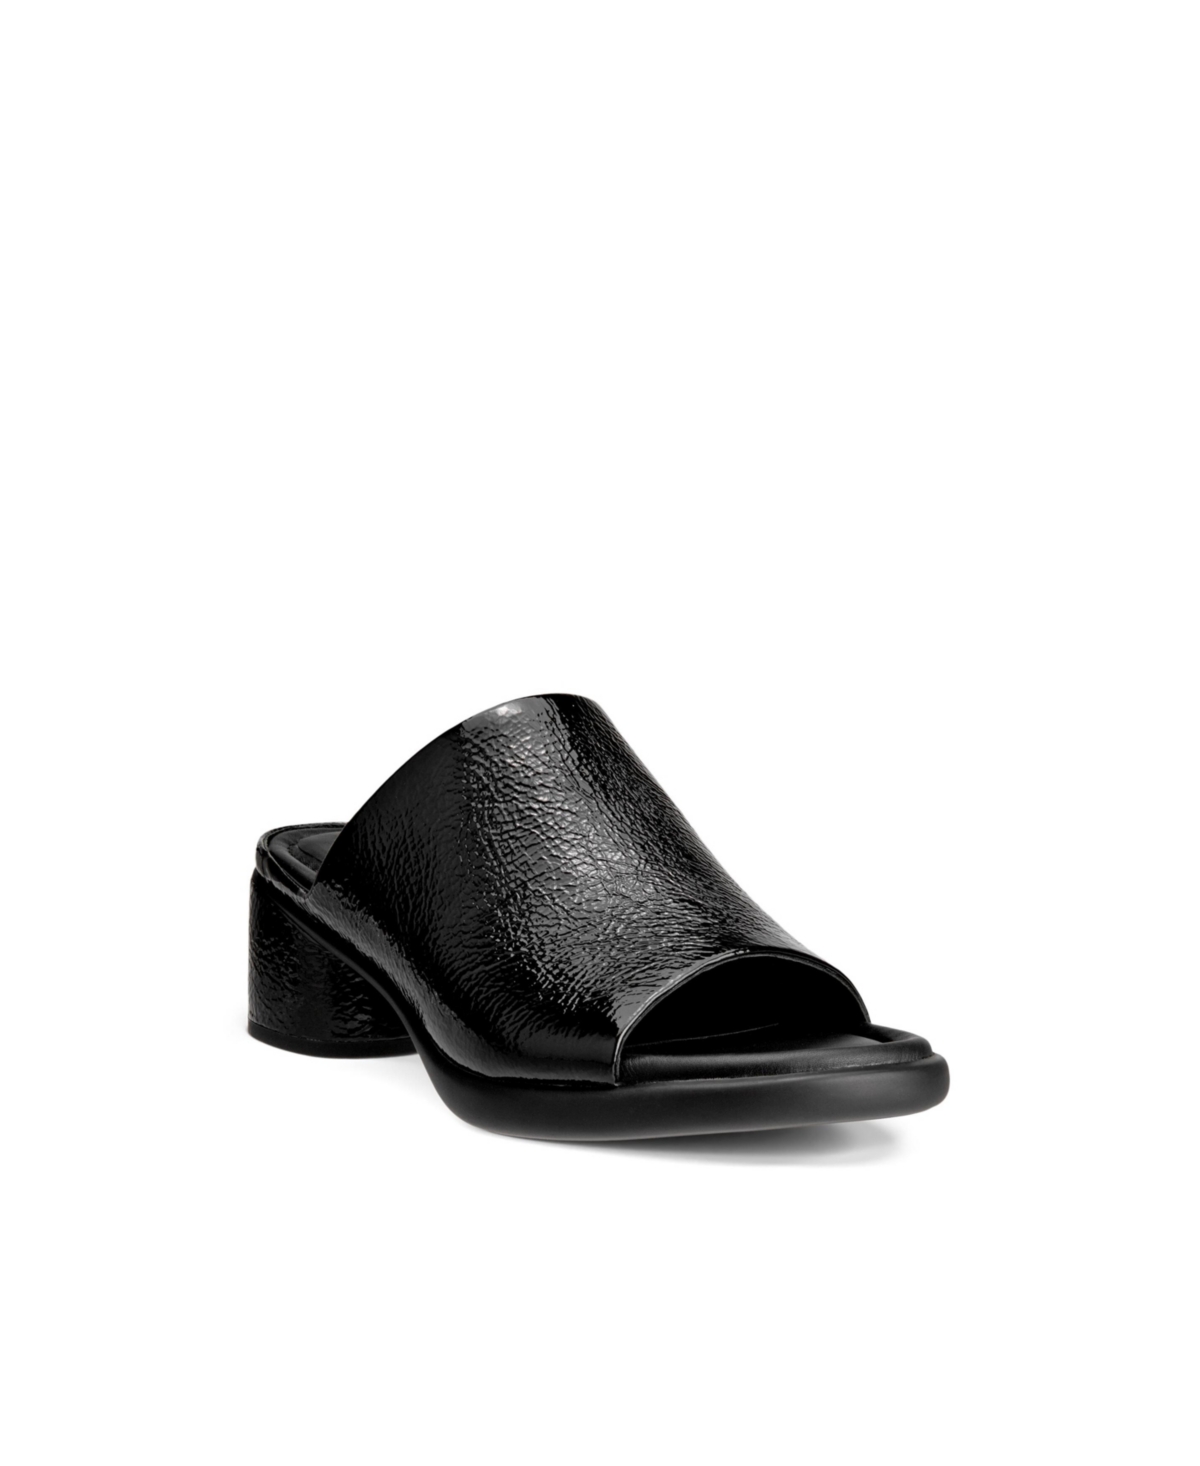 Women's Sculpted Sandal Lx 35 Slip-On Mules - Black